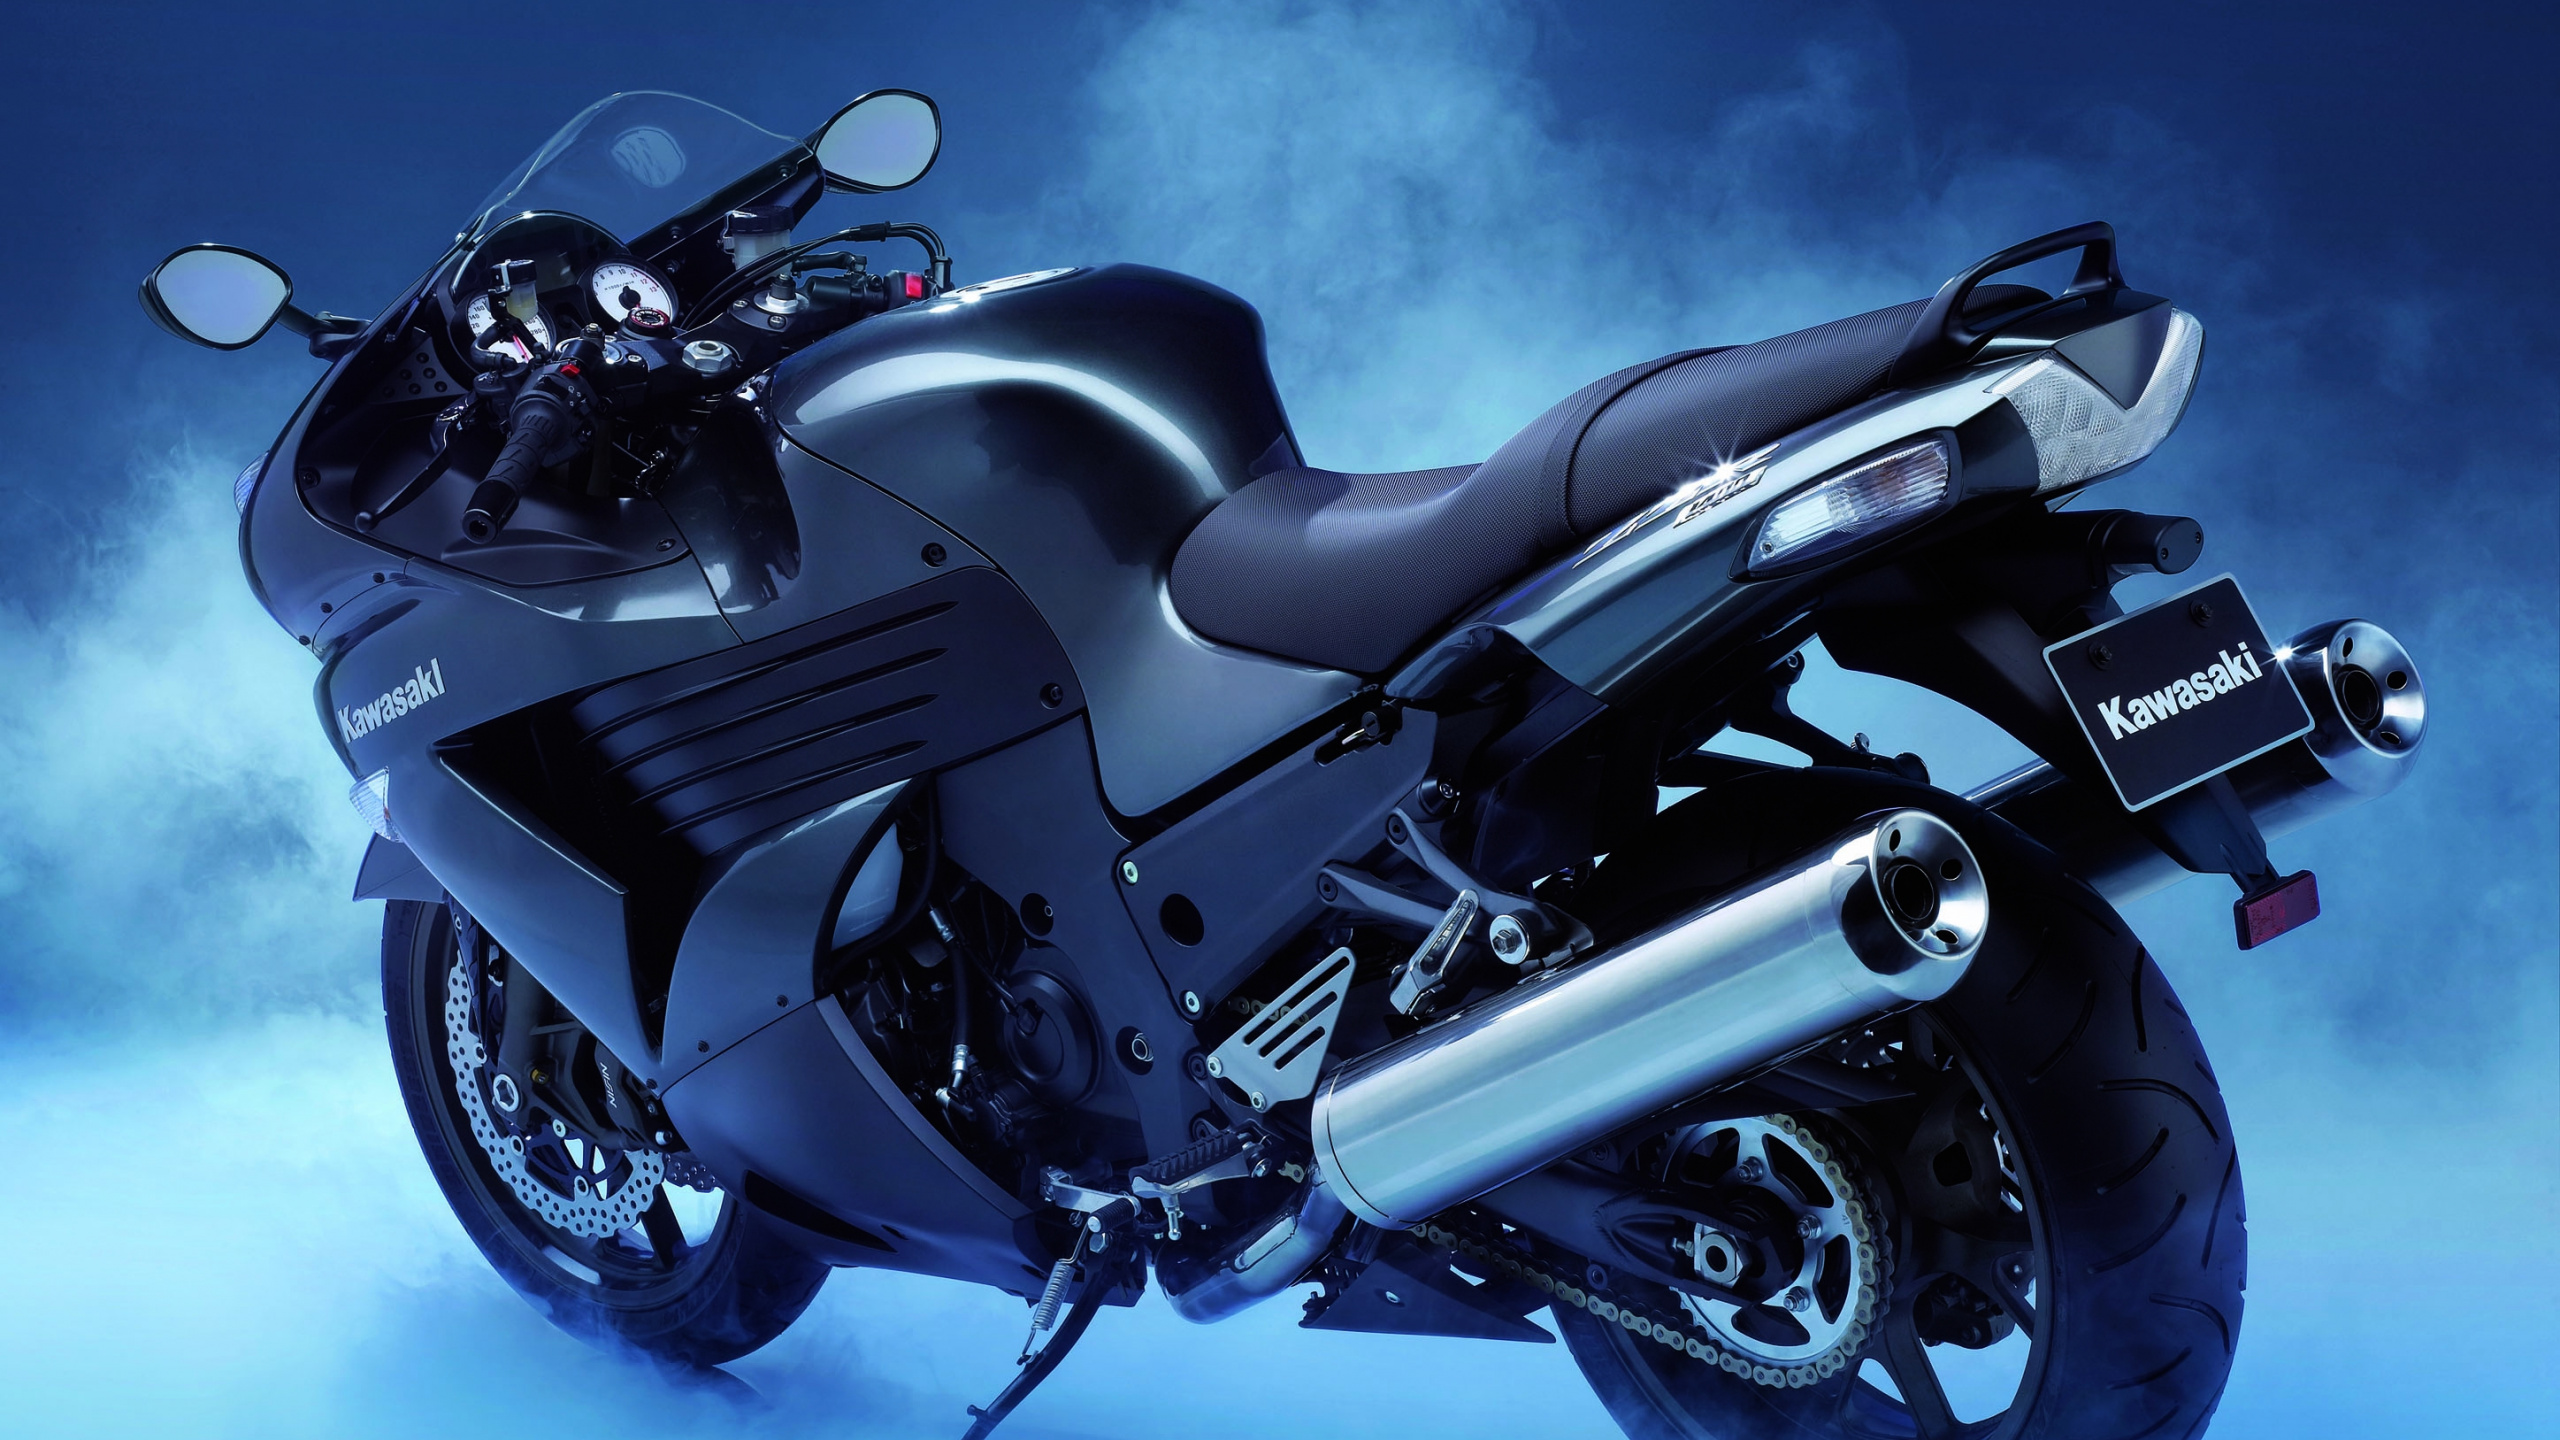 川崎摩托车, 川崎Z650, 汽车轮胎, 车灯, 头灯 壁纸 2560x1440 允许